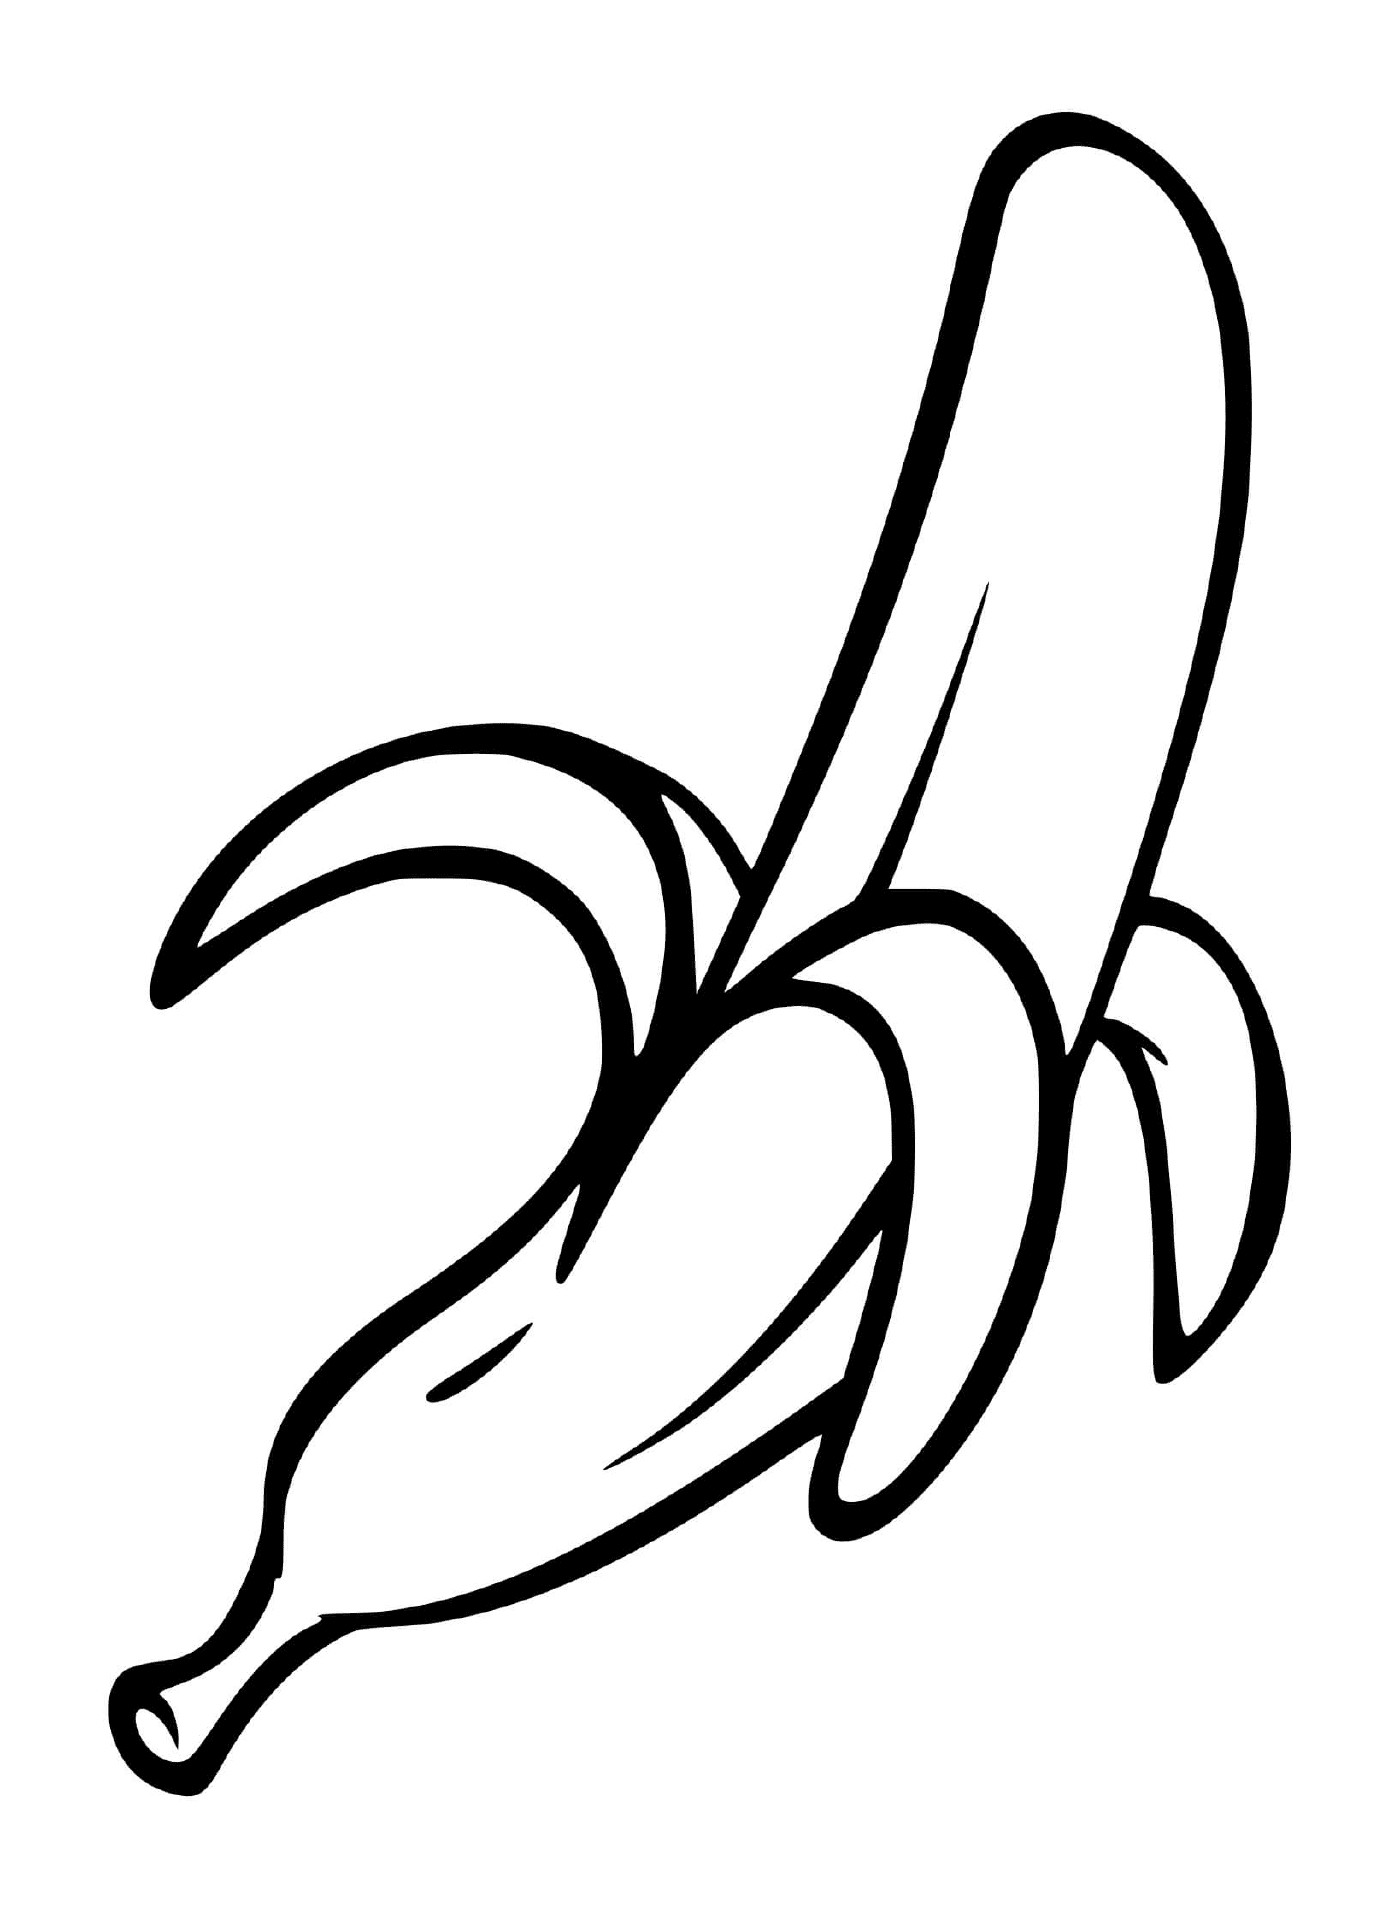  Eine geschälte Banane 